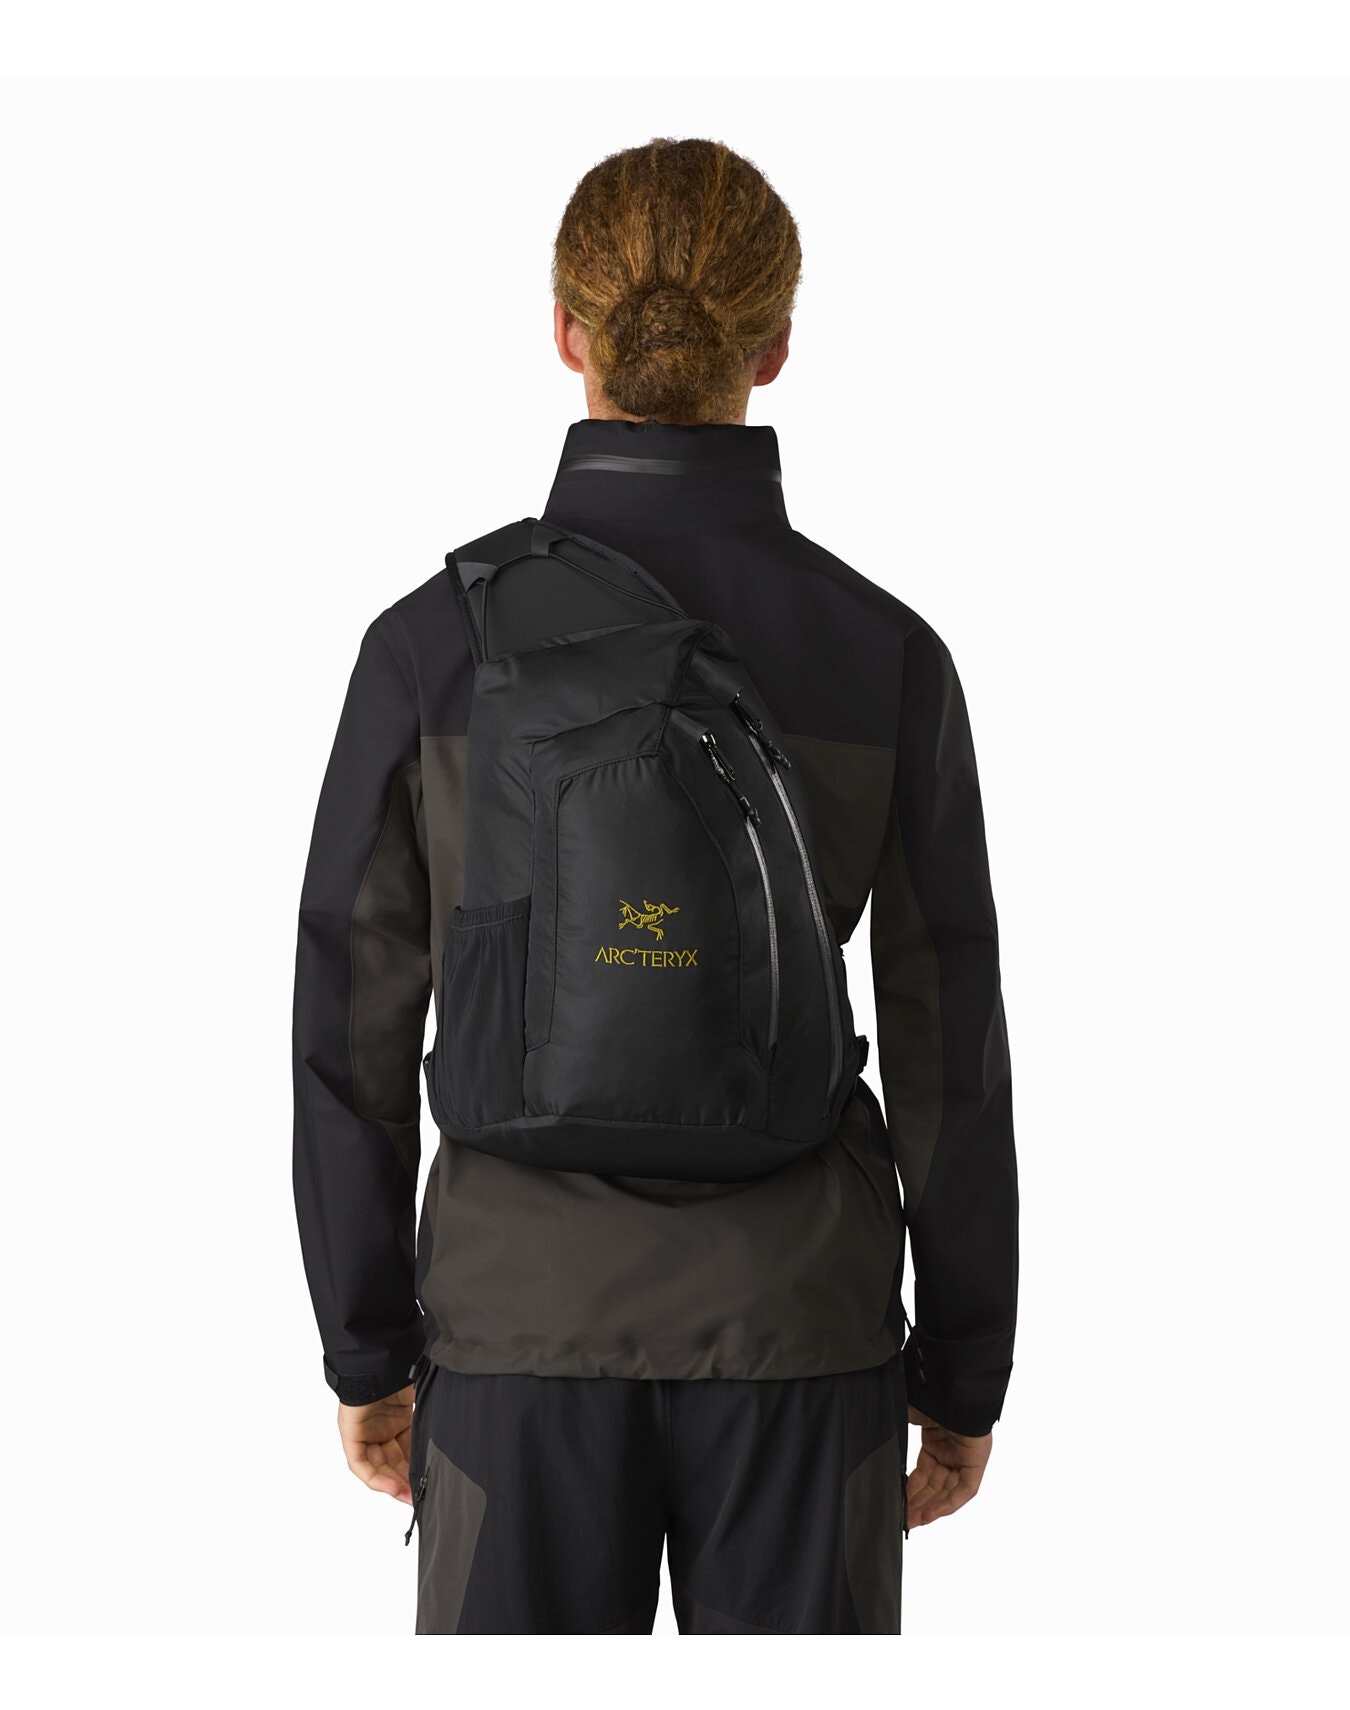 Arc'teryx Quiver Backpack Black Nylon x Polyurethane Men's Climbing Outdoor